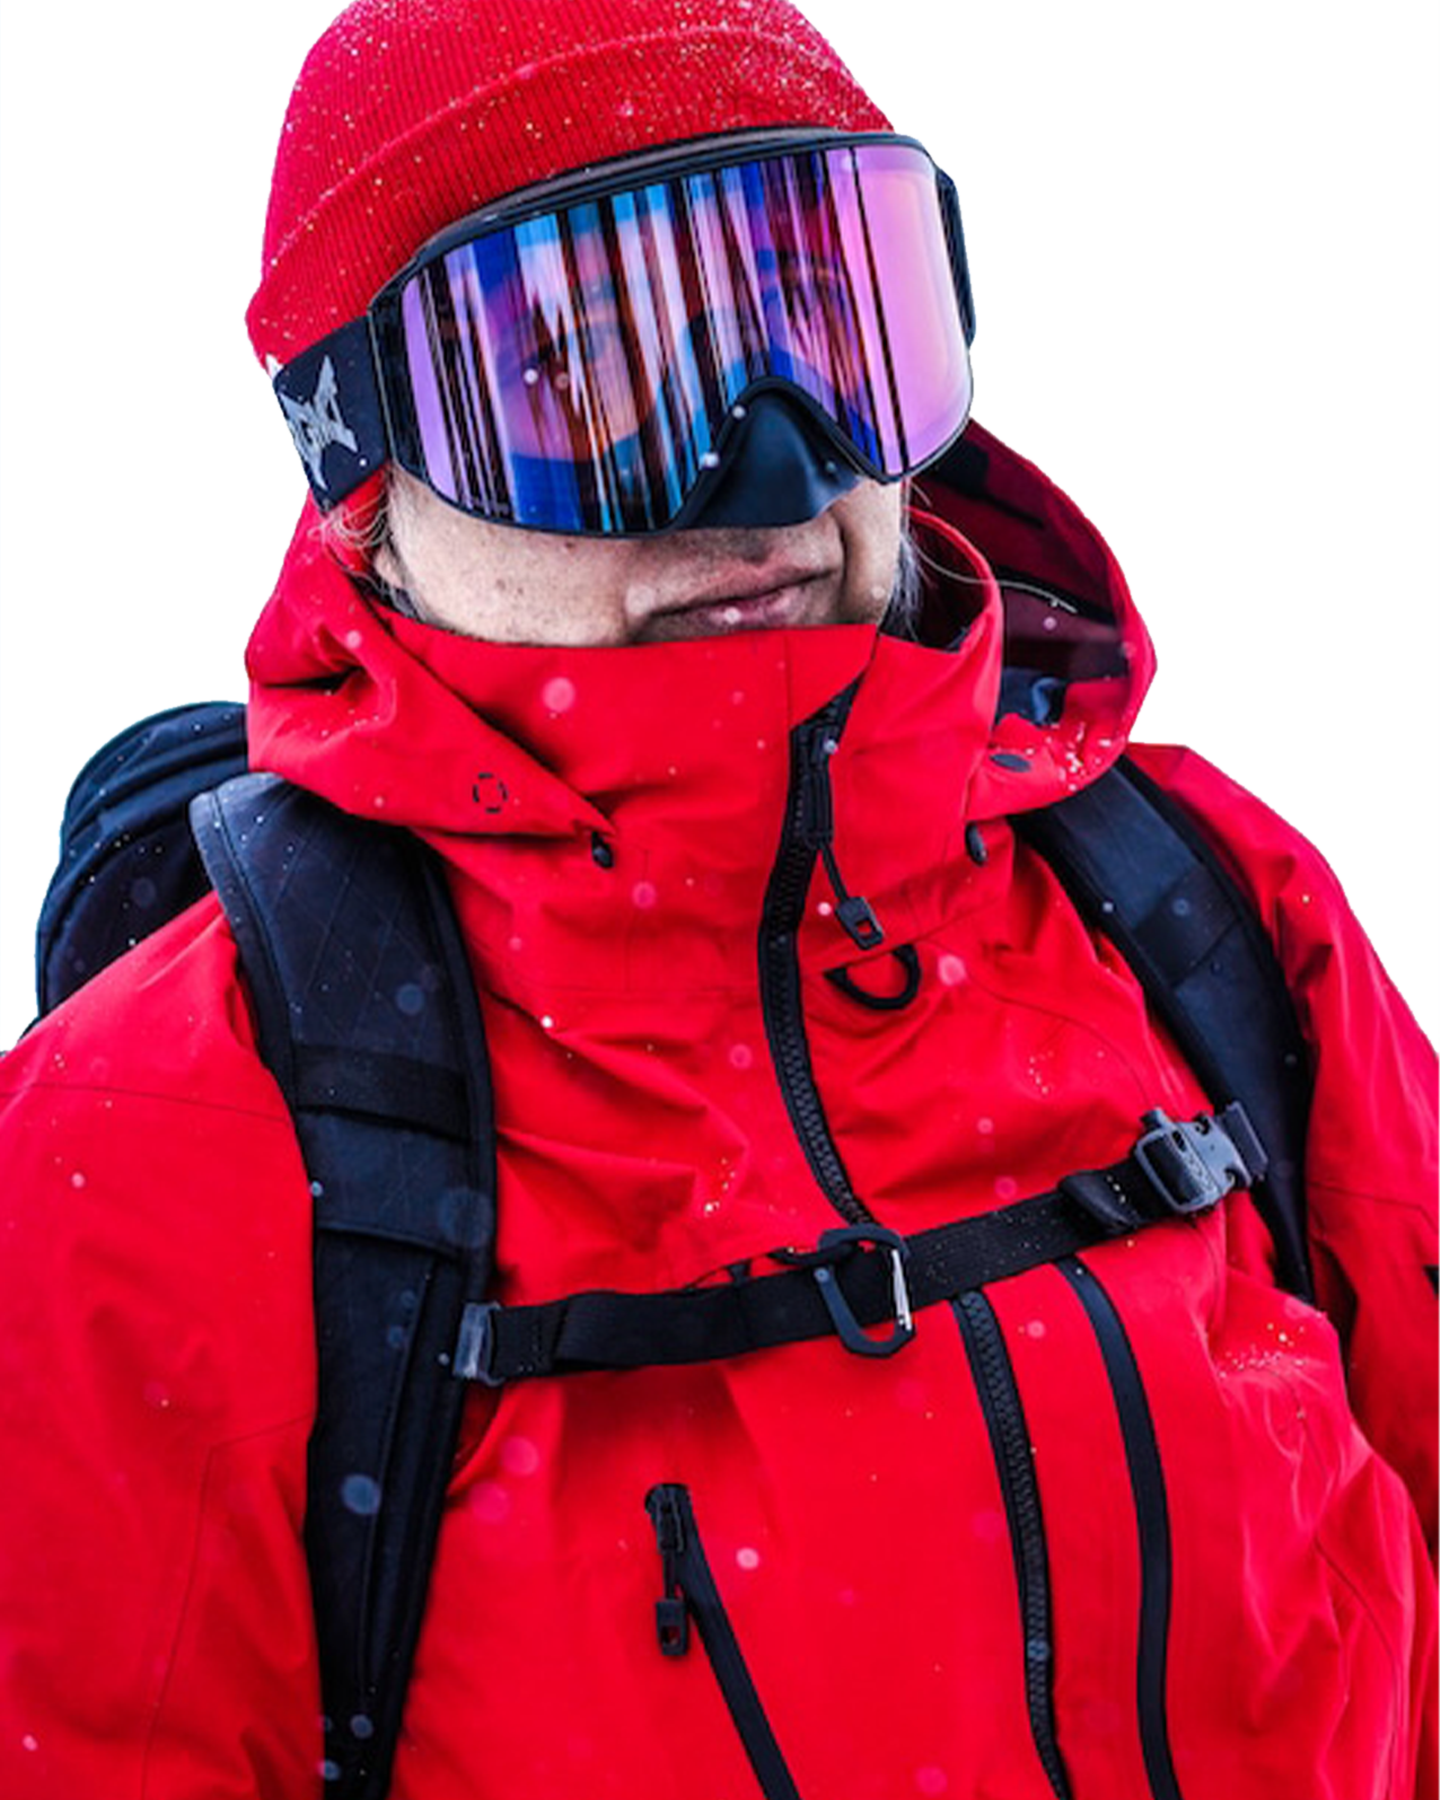 Burton Men's [ak]® AK457 Japan Guide Gore-Tex Pro 3L Snow Jacket - Turbo Red Men's Snow Jackets - Trojan Wake Ski Snow